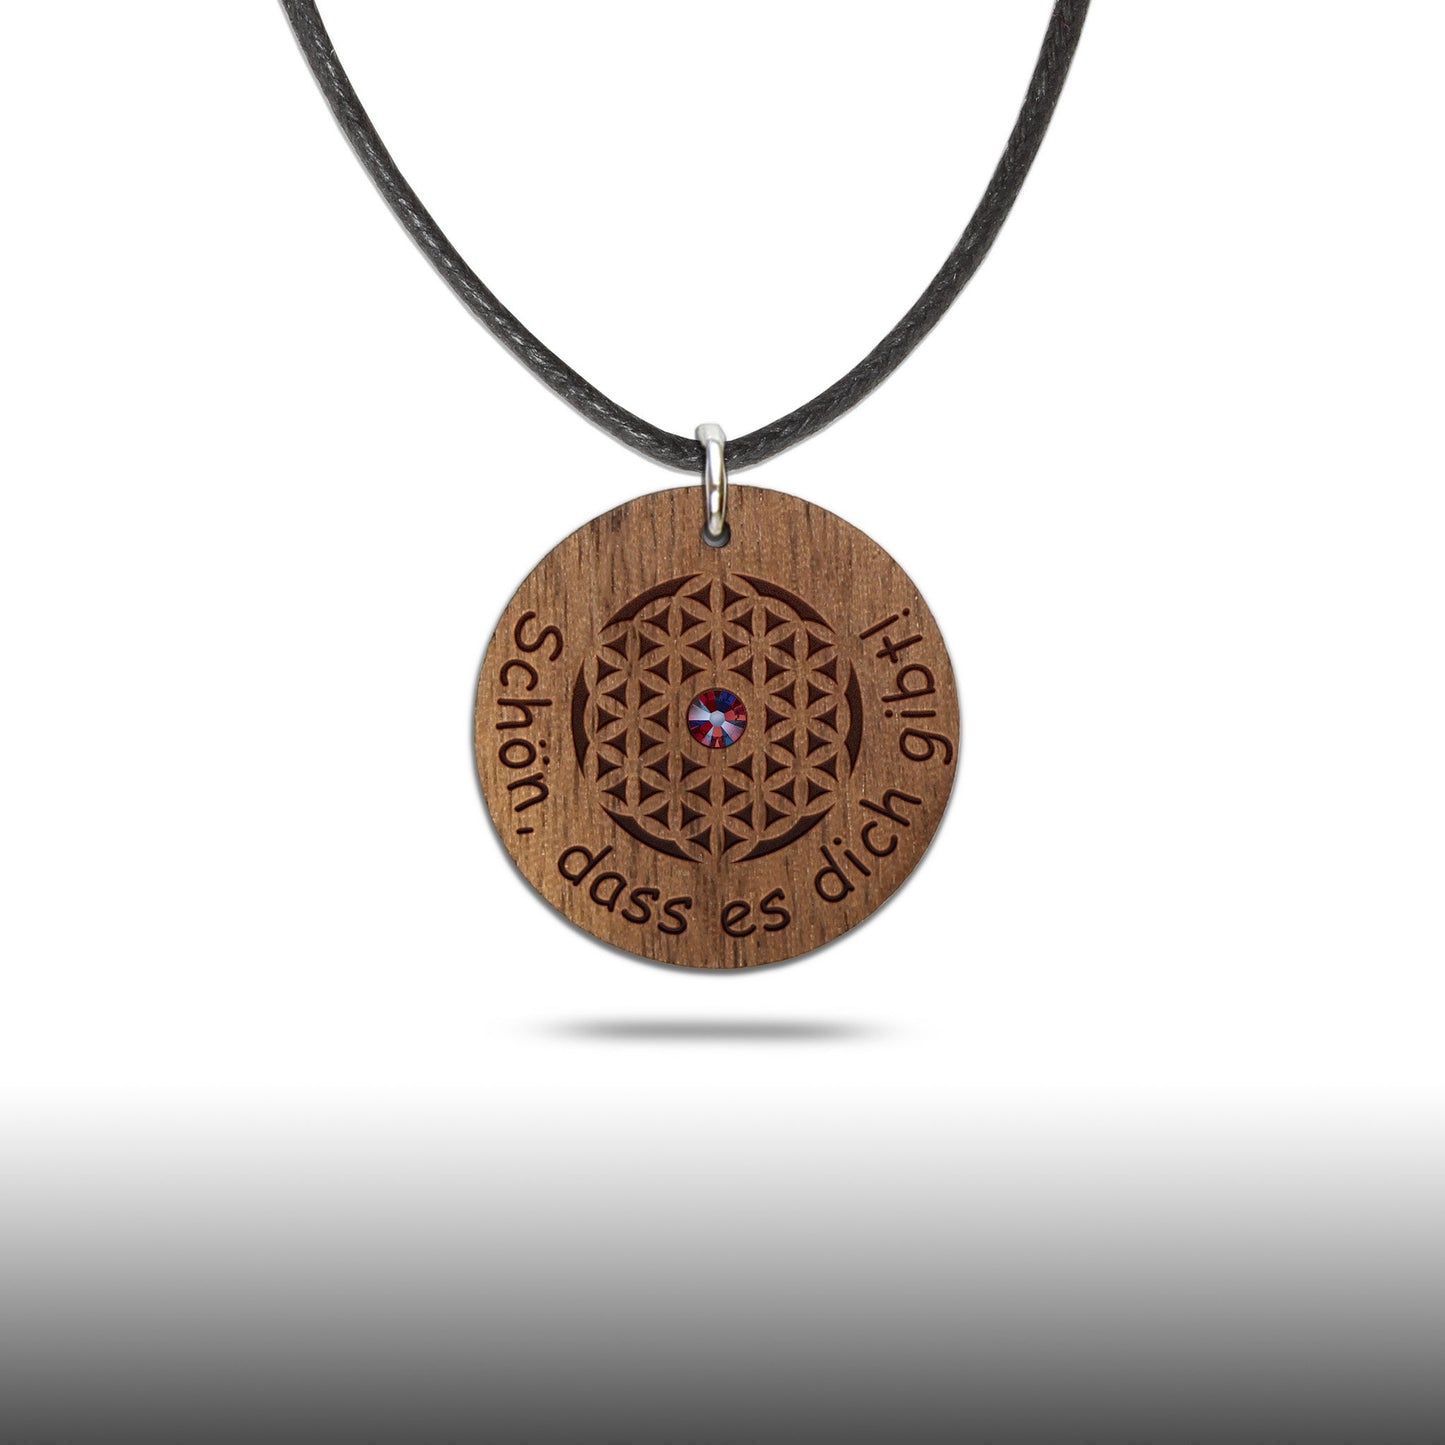 Halskette "Schön, dass es dich gibt" - Nanino Design Onlineshop -